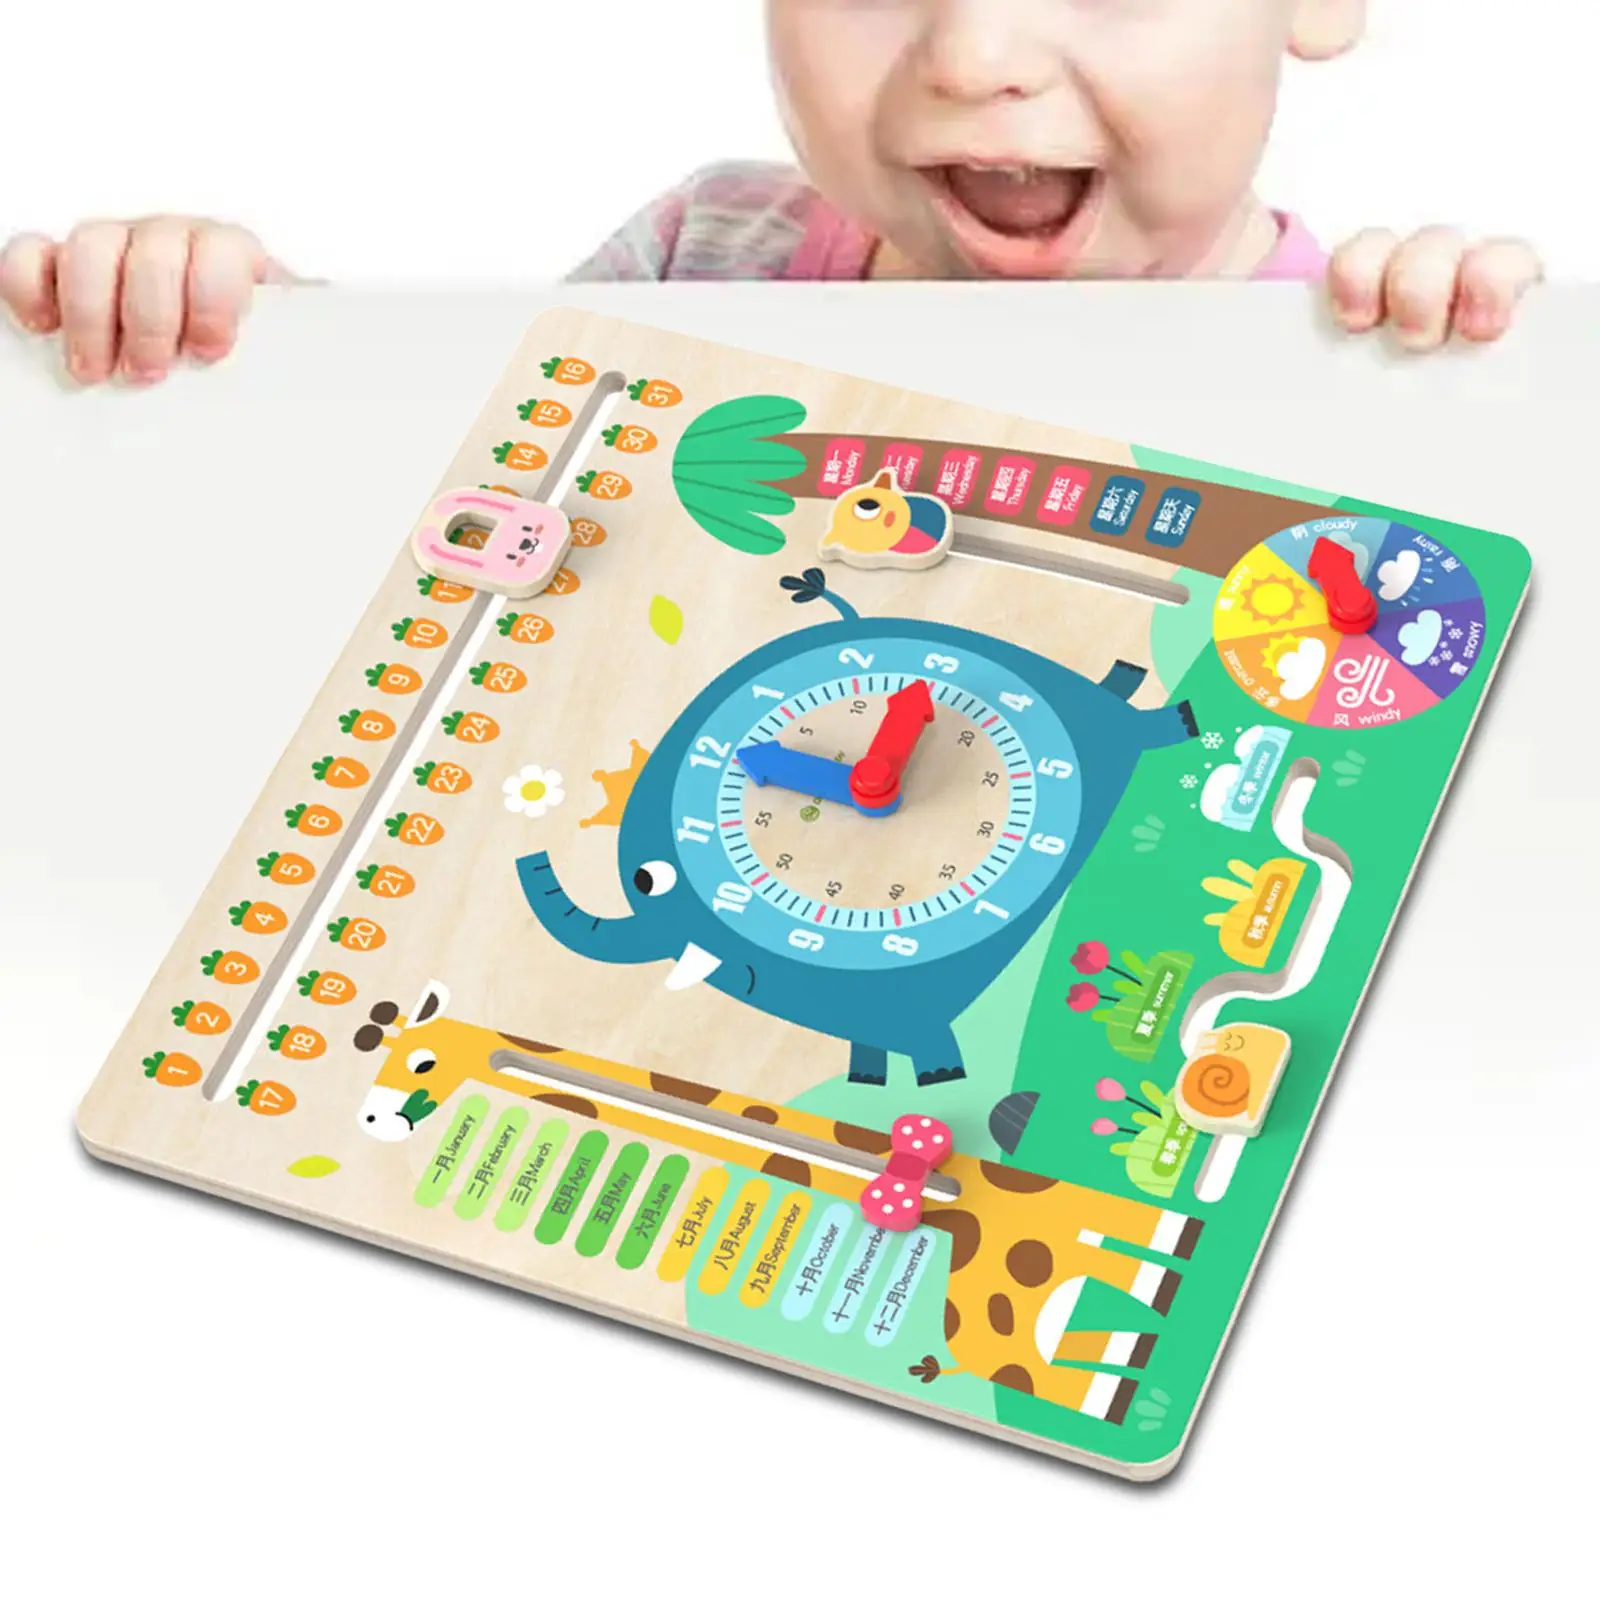 

Детский календарь Обучающие часы головоломка обучающая игрушка календарь время обучающая игрушка Монтессори для детей Дошкольный мальчик девочка